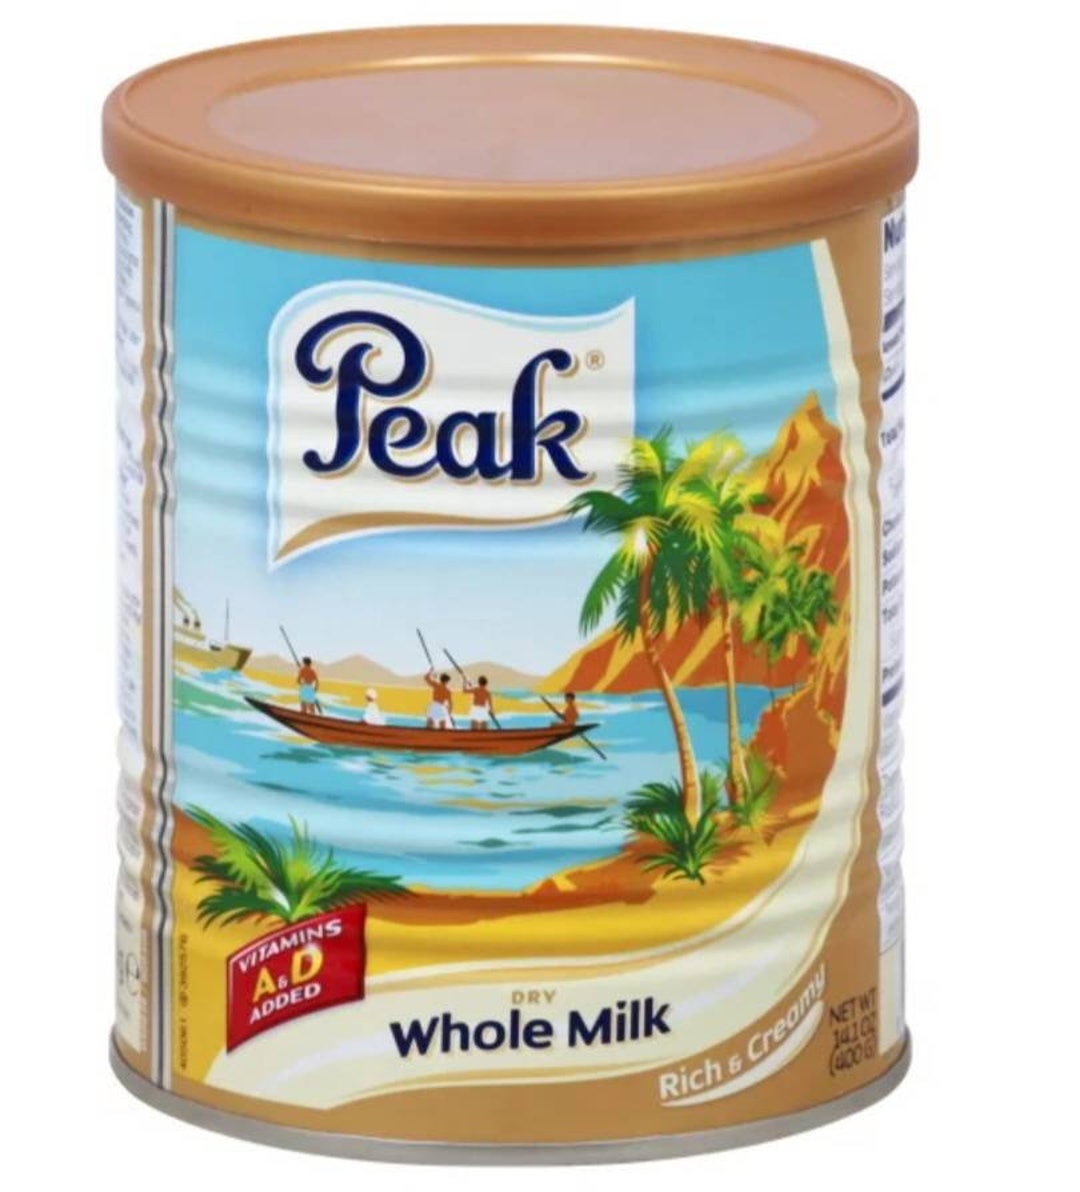 Peak Dry Whole Milk 400g/ Peak Instant Full Cream Dry Whole Milk Powder ...